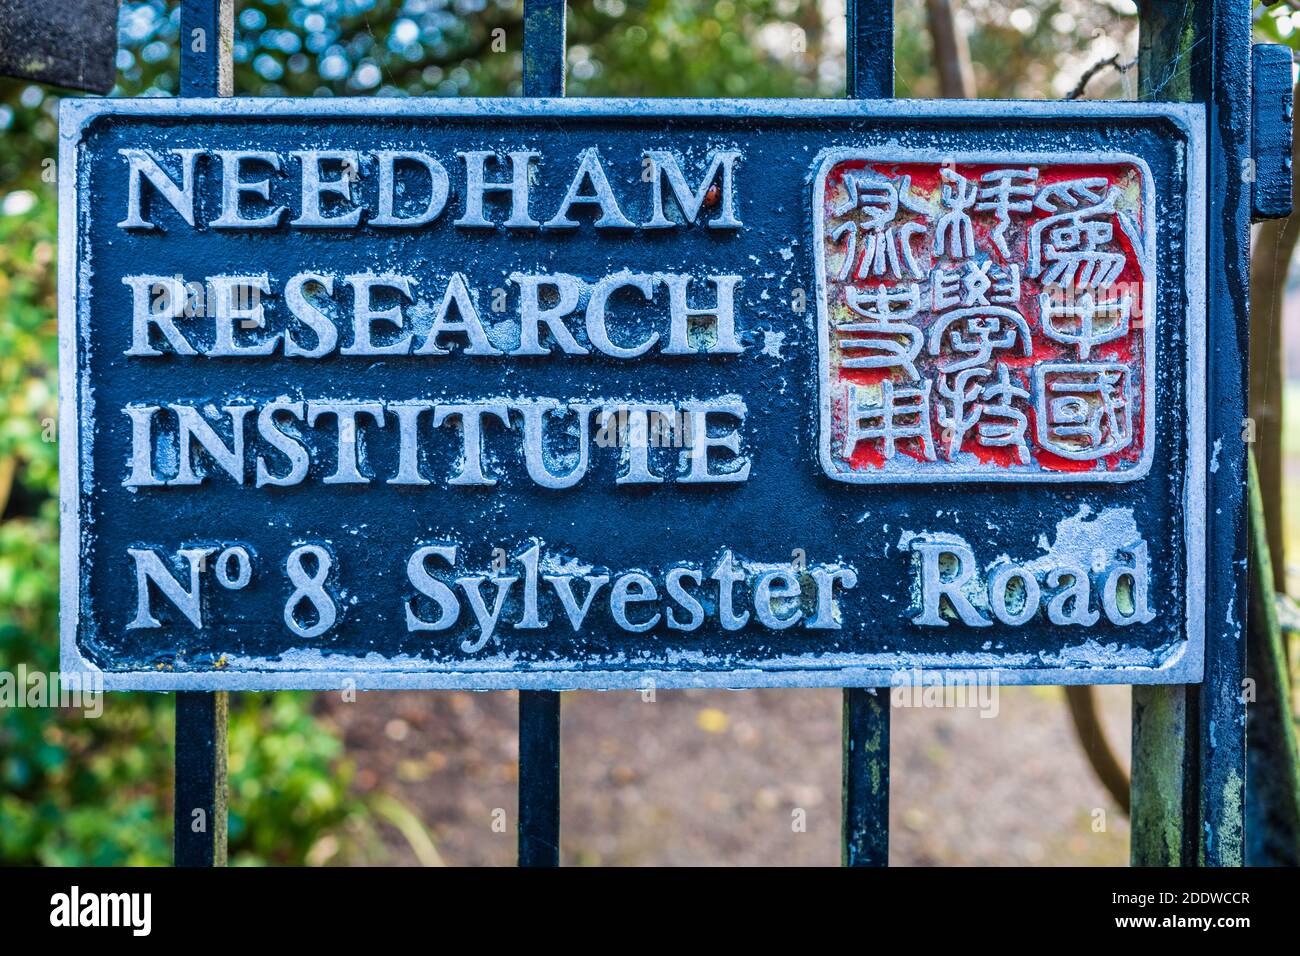 Needham Research Institute Cambridge - porta d'accesso all'Needham Research Institute, che studia storia della scienza, della tecnologia e della medicina nell'Asia orientale. Foto Stock